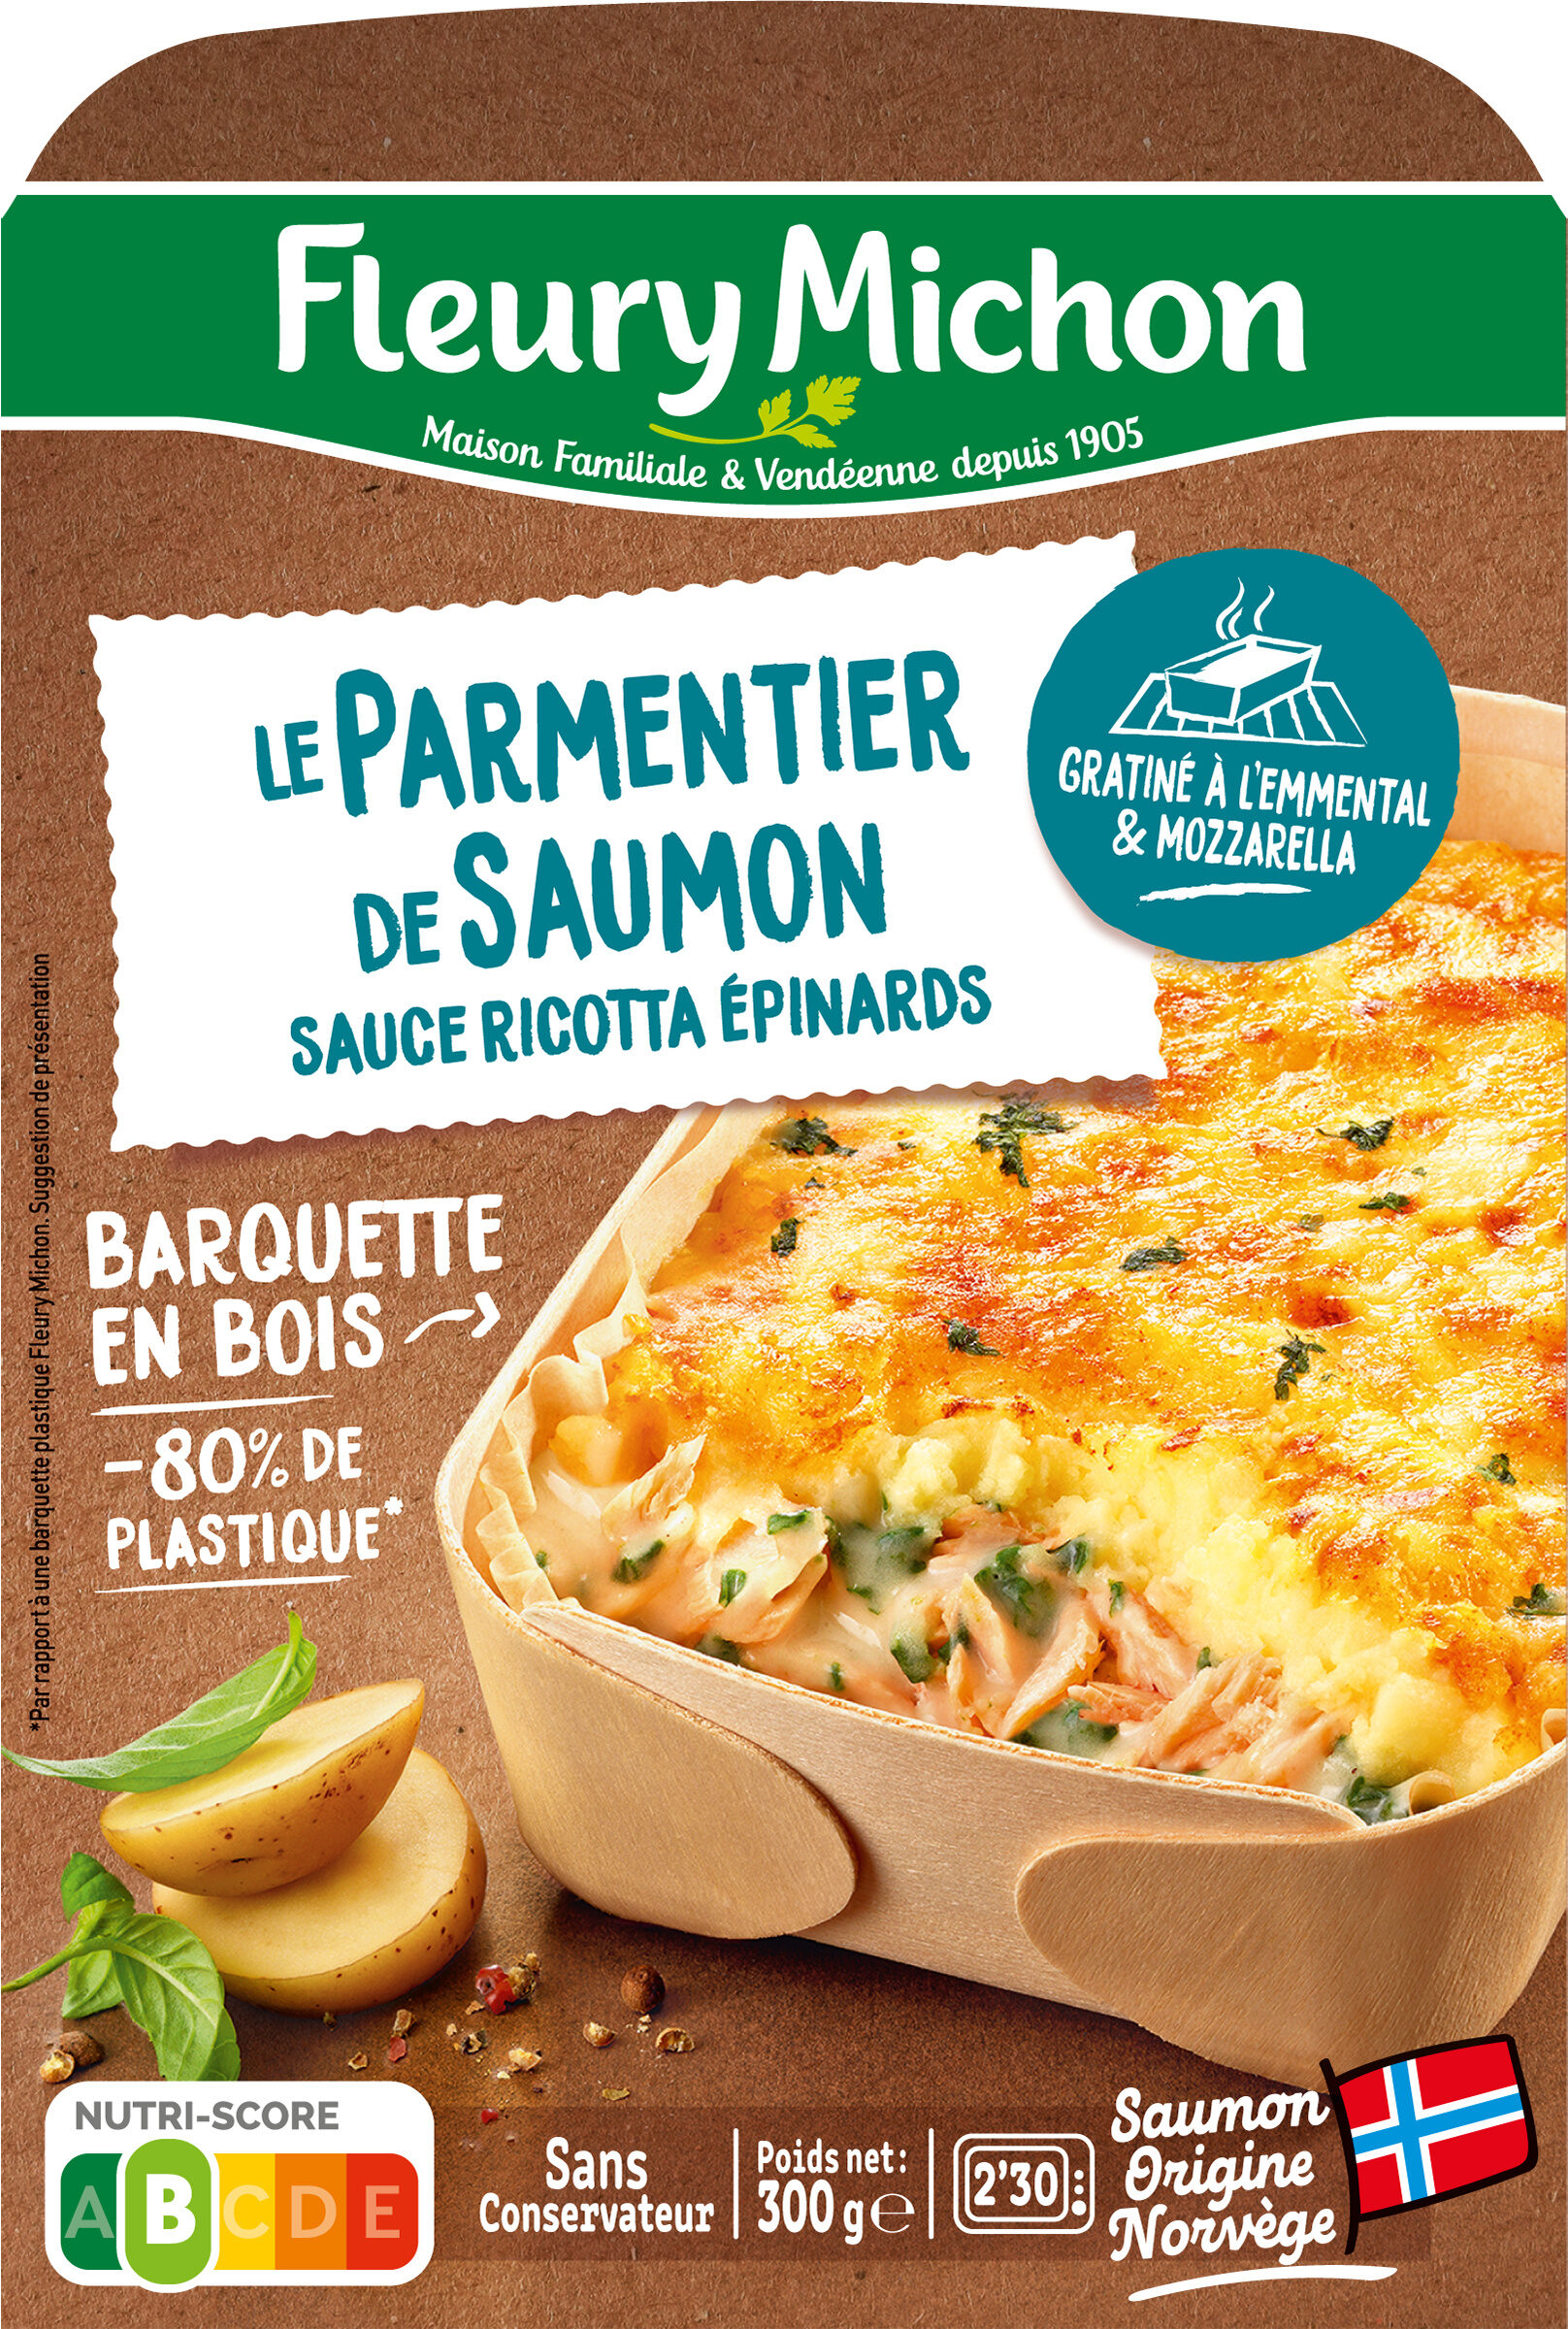 Le Parmentier de Saumon sauce ricotta épinards - Product - fr